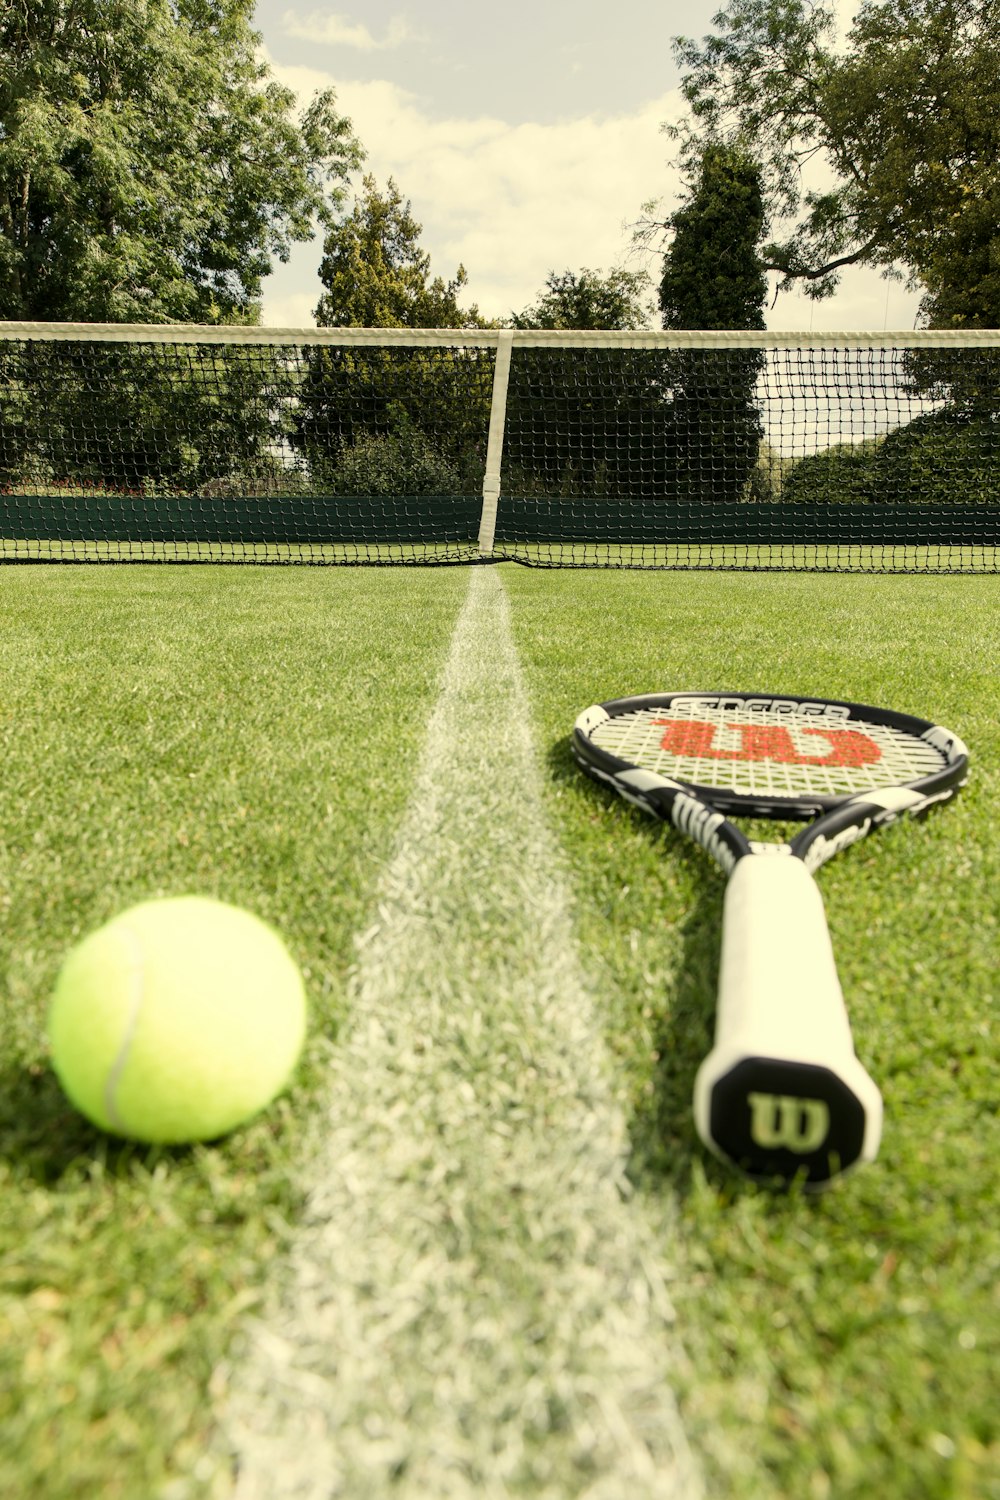 a tennis racket and a tennis ball on a grass court